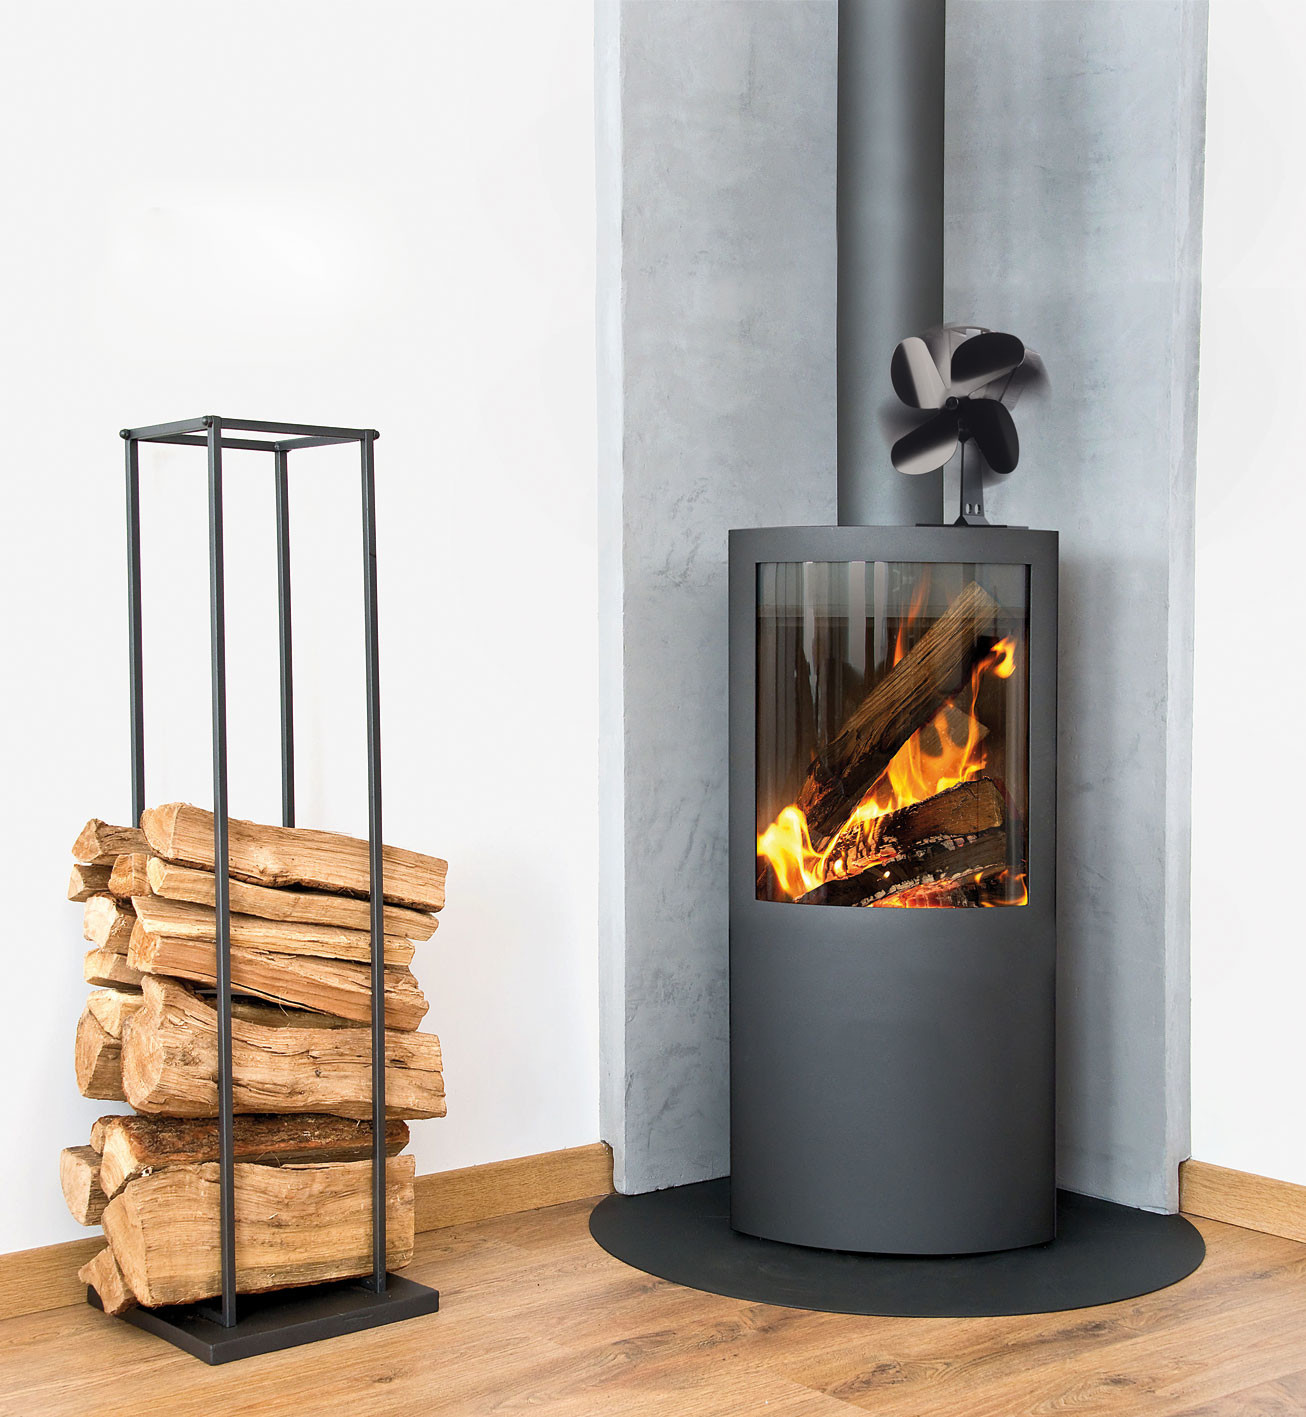 Réchauffez l'atmosphère avec ce ventilateur pour poêle à bois qui fait  flamber les prix